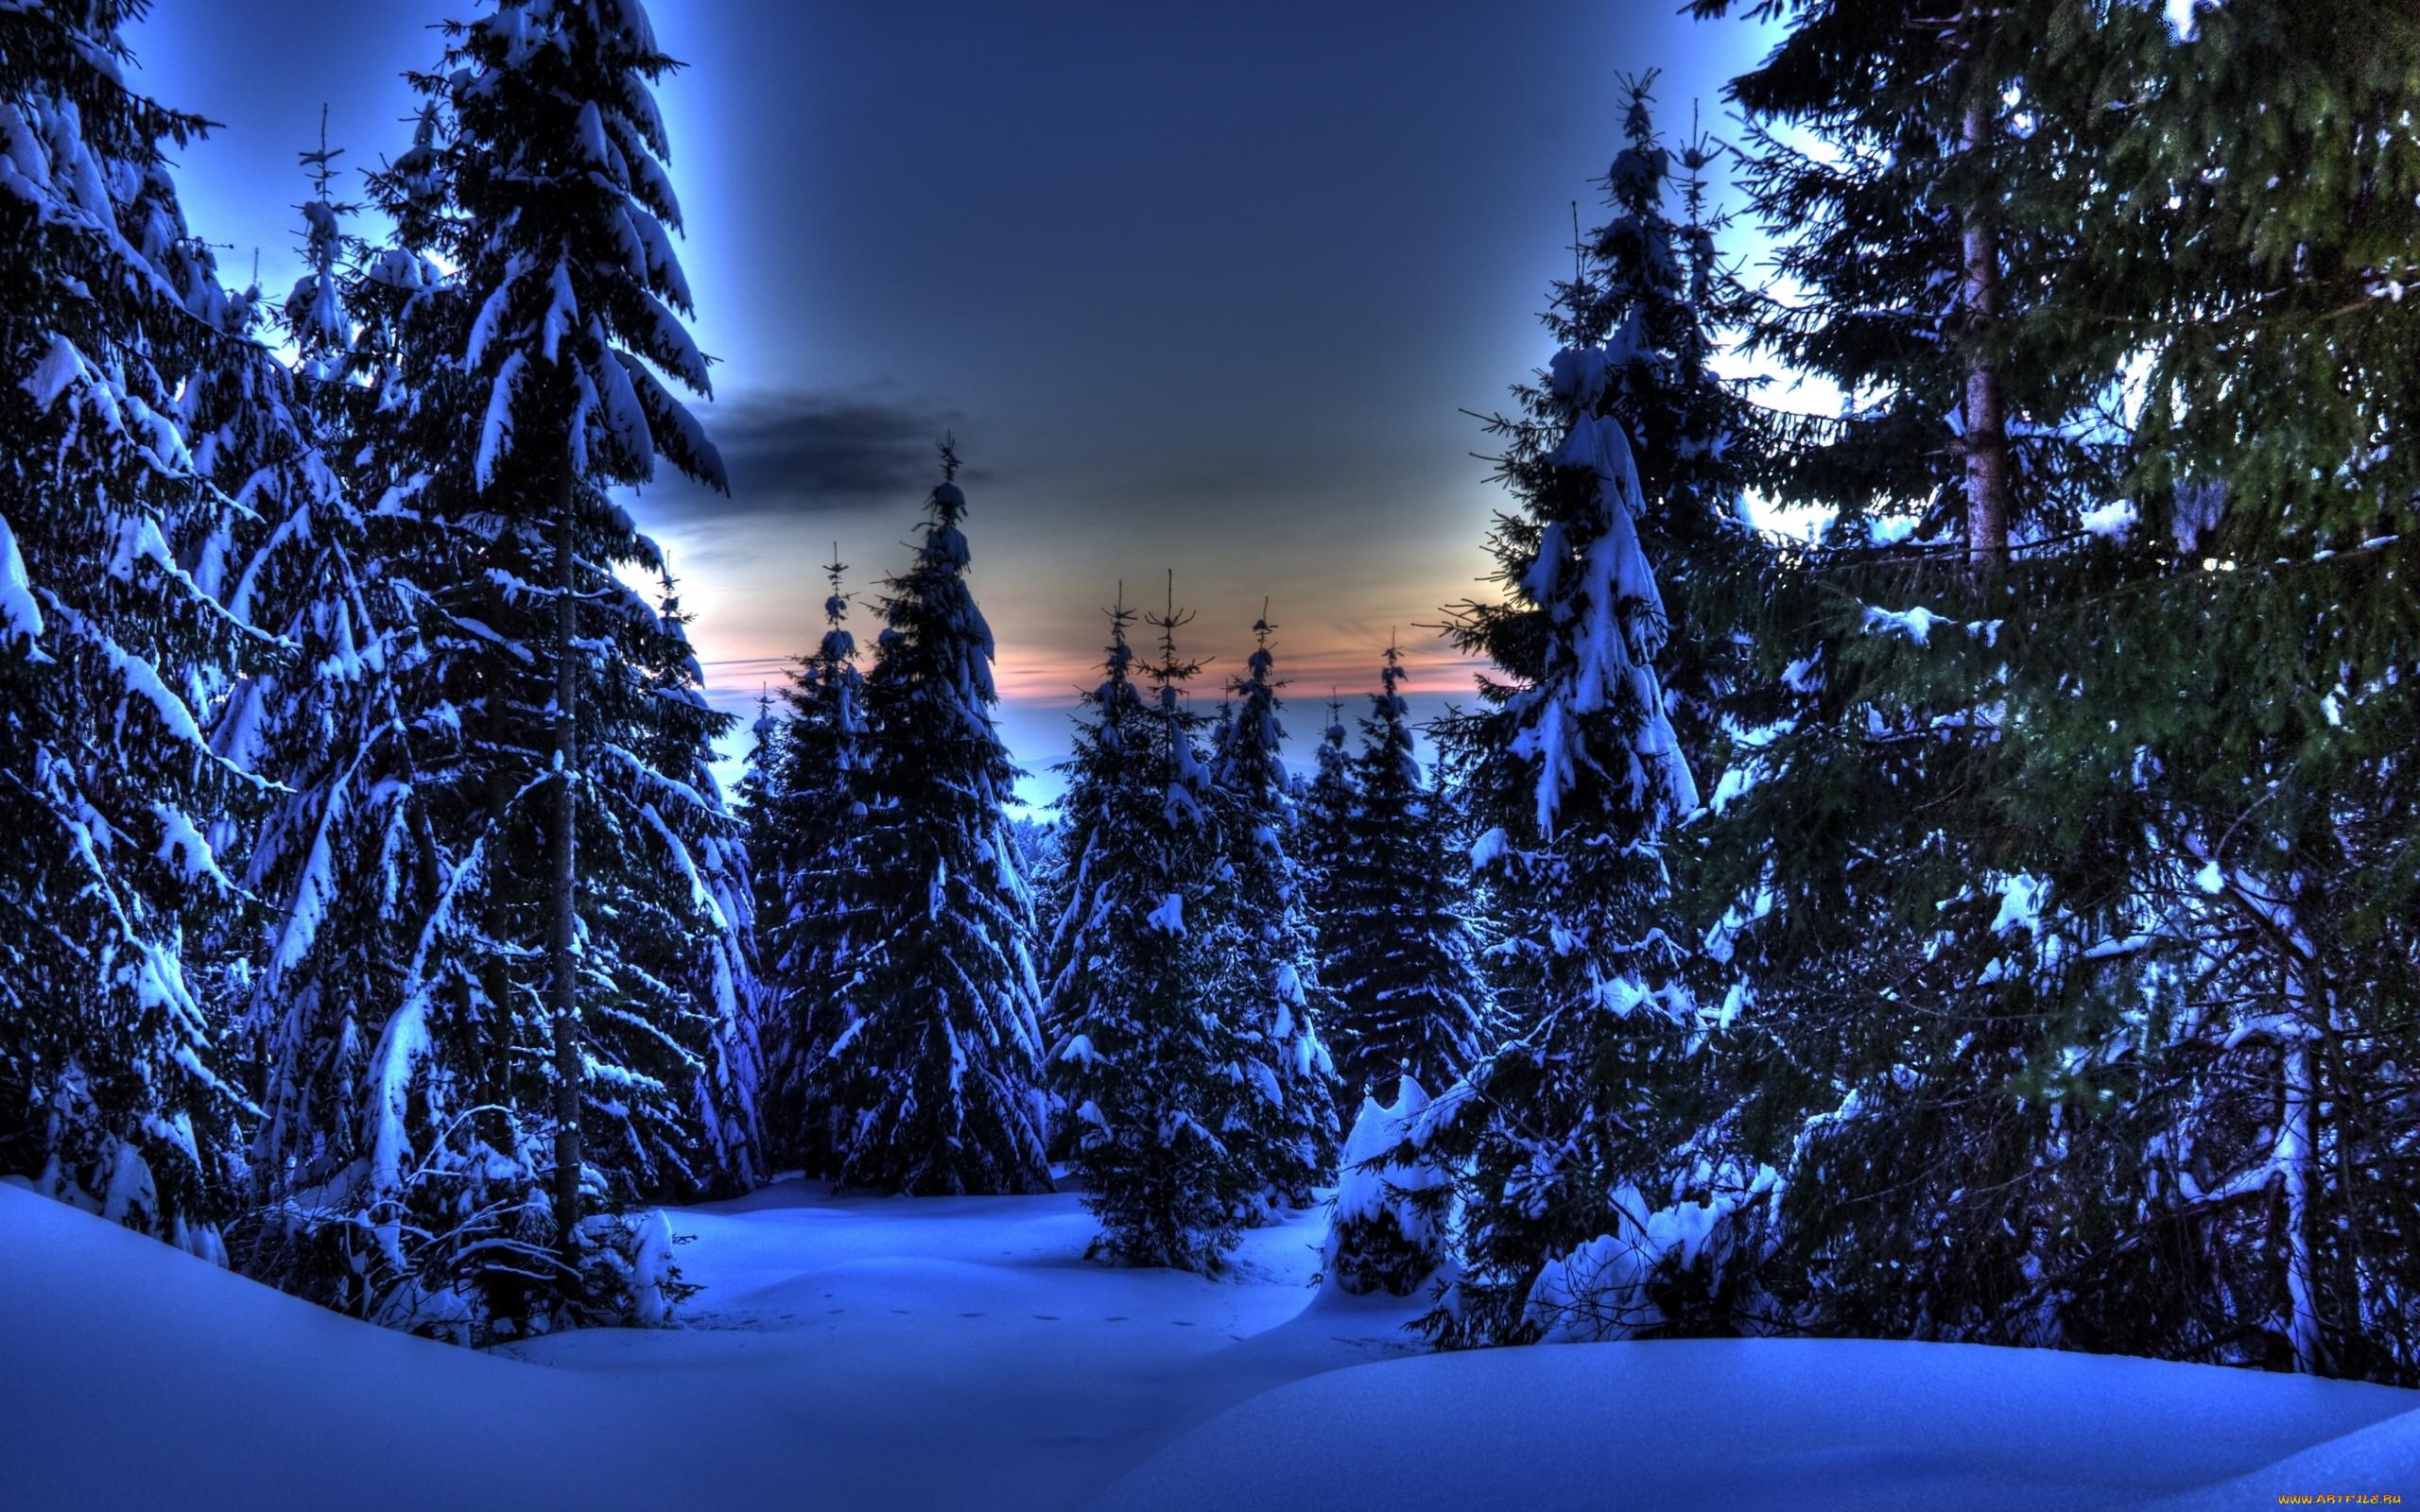 Картинки вода, горы, деревья, зима, красивые, небо, природа, снег,  широкоформатные - обои 1600x900, картинка №128888